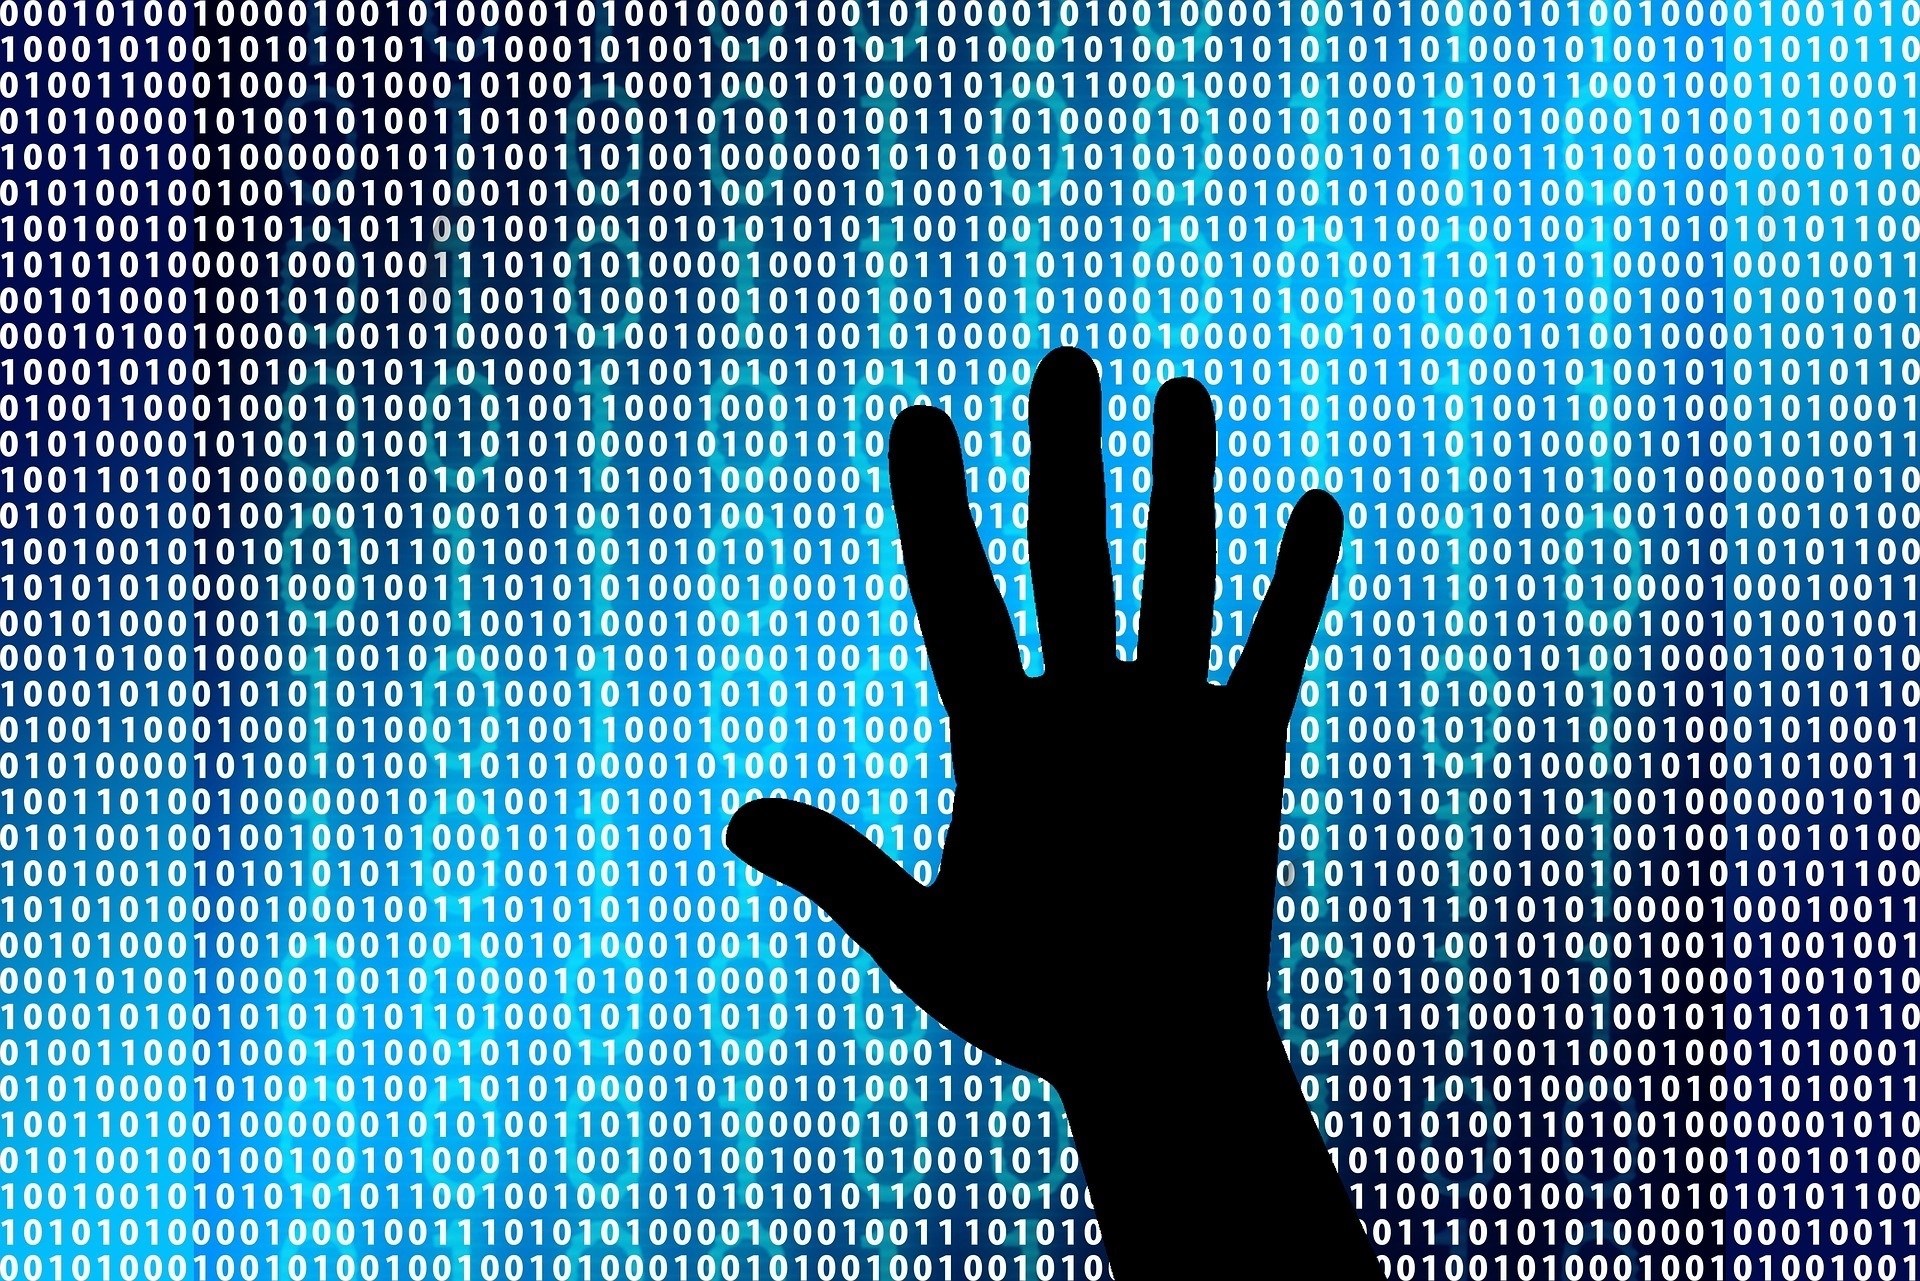 El »malware» Locky infecta al 11,5% de las empresas en todo el mundo